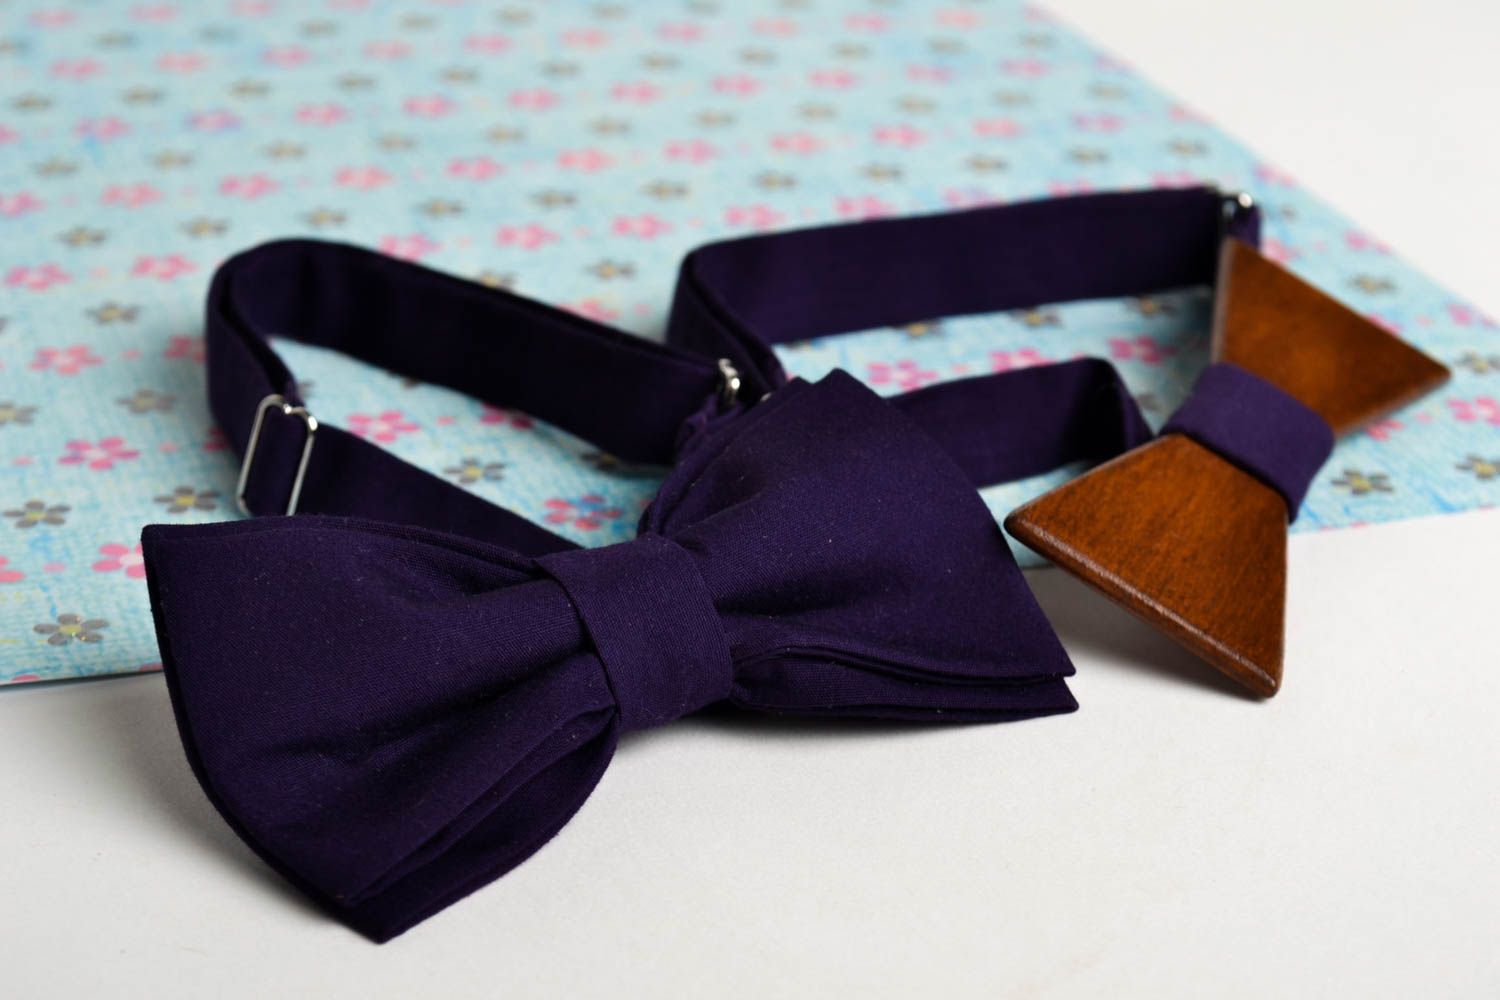 Handmade stylish bow tie wooden bow tie men accessories present for boyfriend photo 1